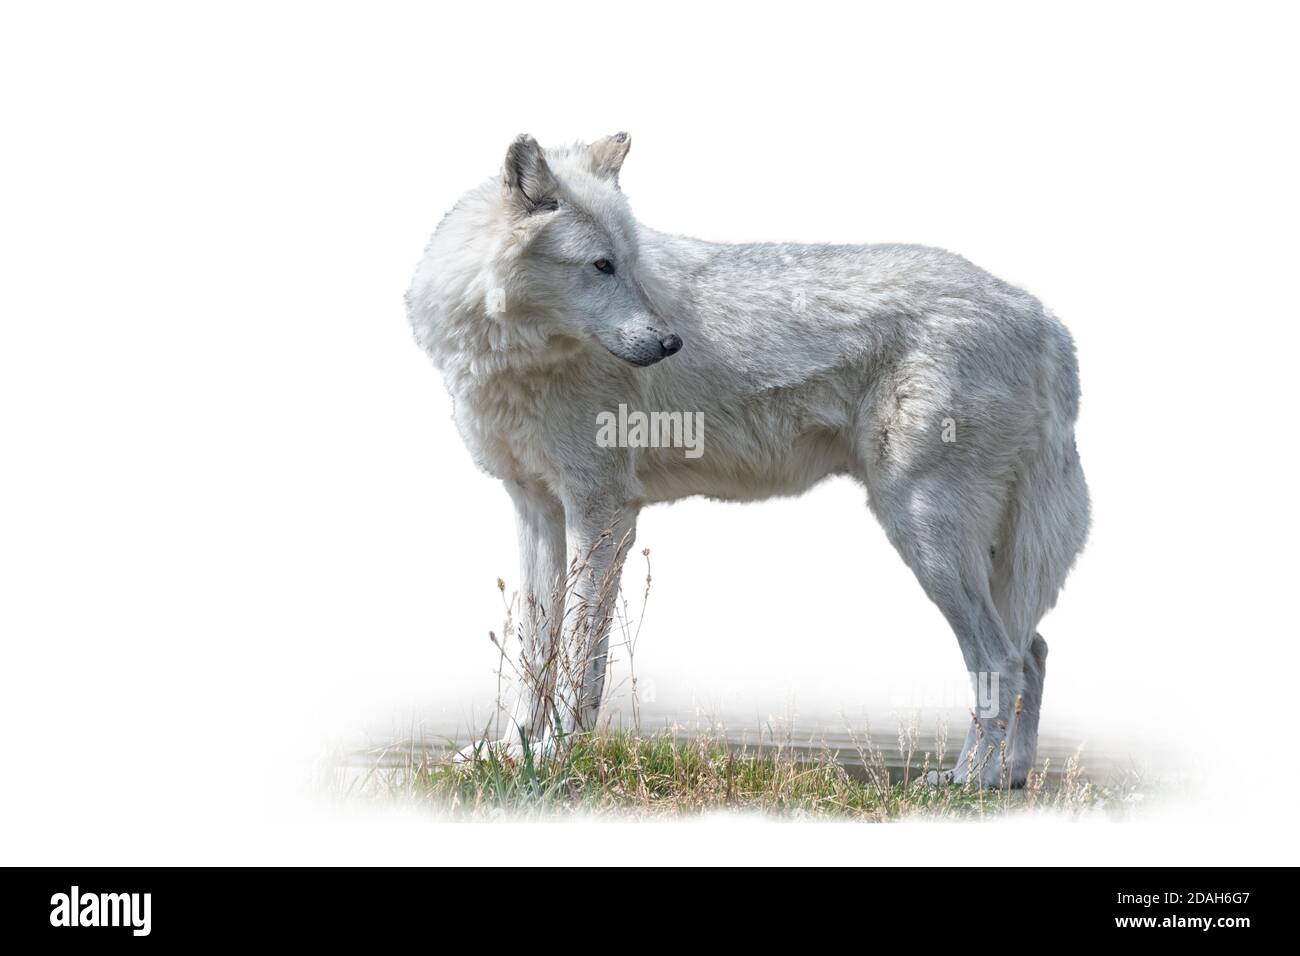 Gros plan sur le loup gris dans un champ, parc national de Yellowstone. Isolé sur un fond blanc. Banque D'Images